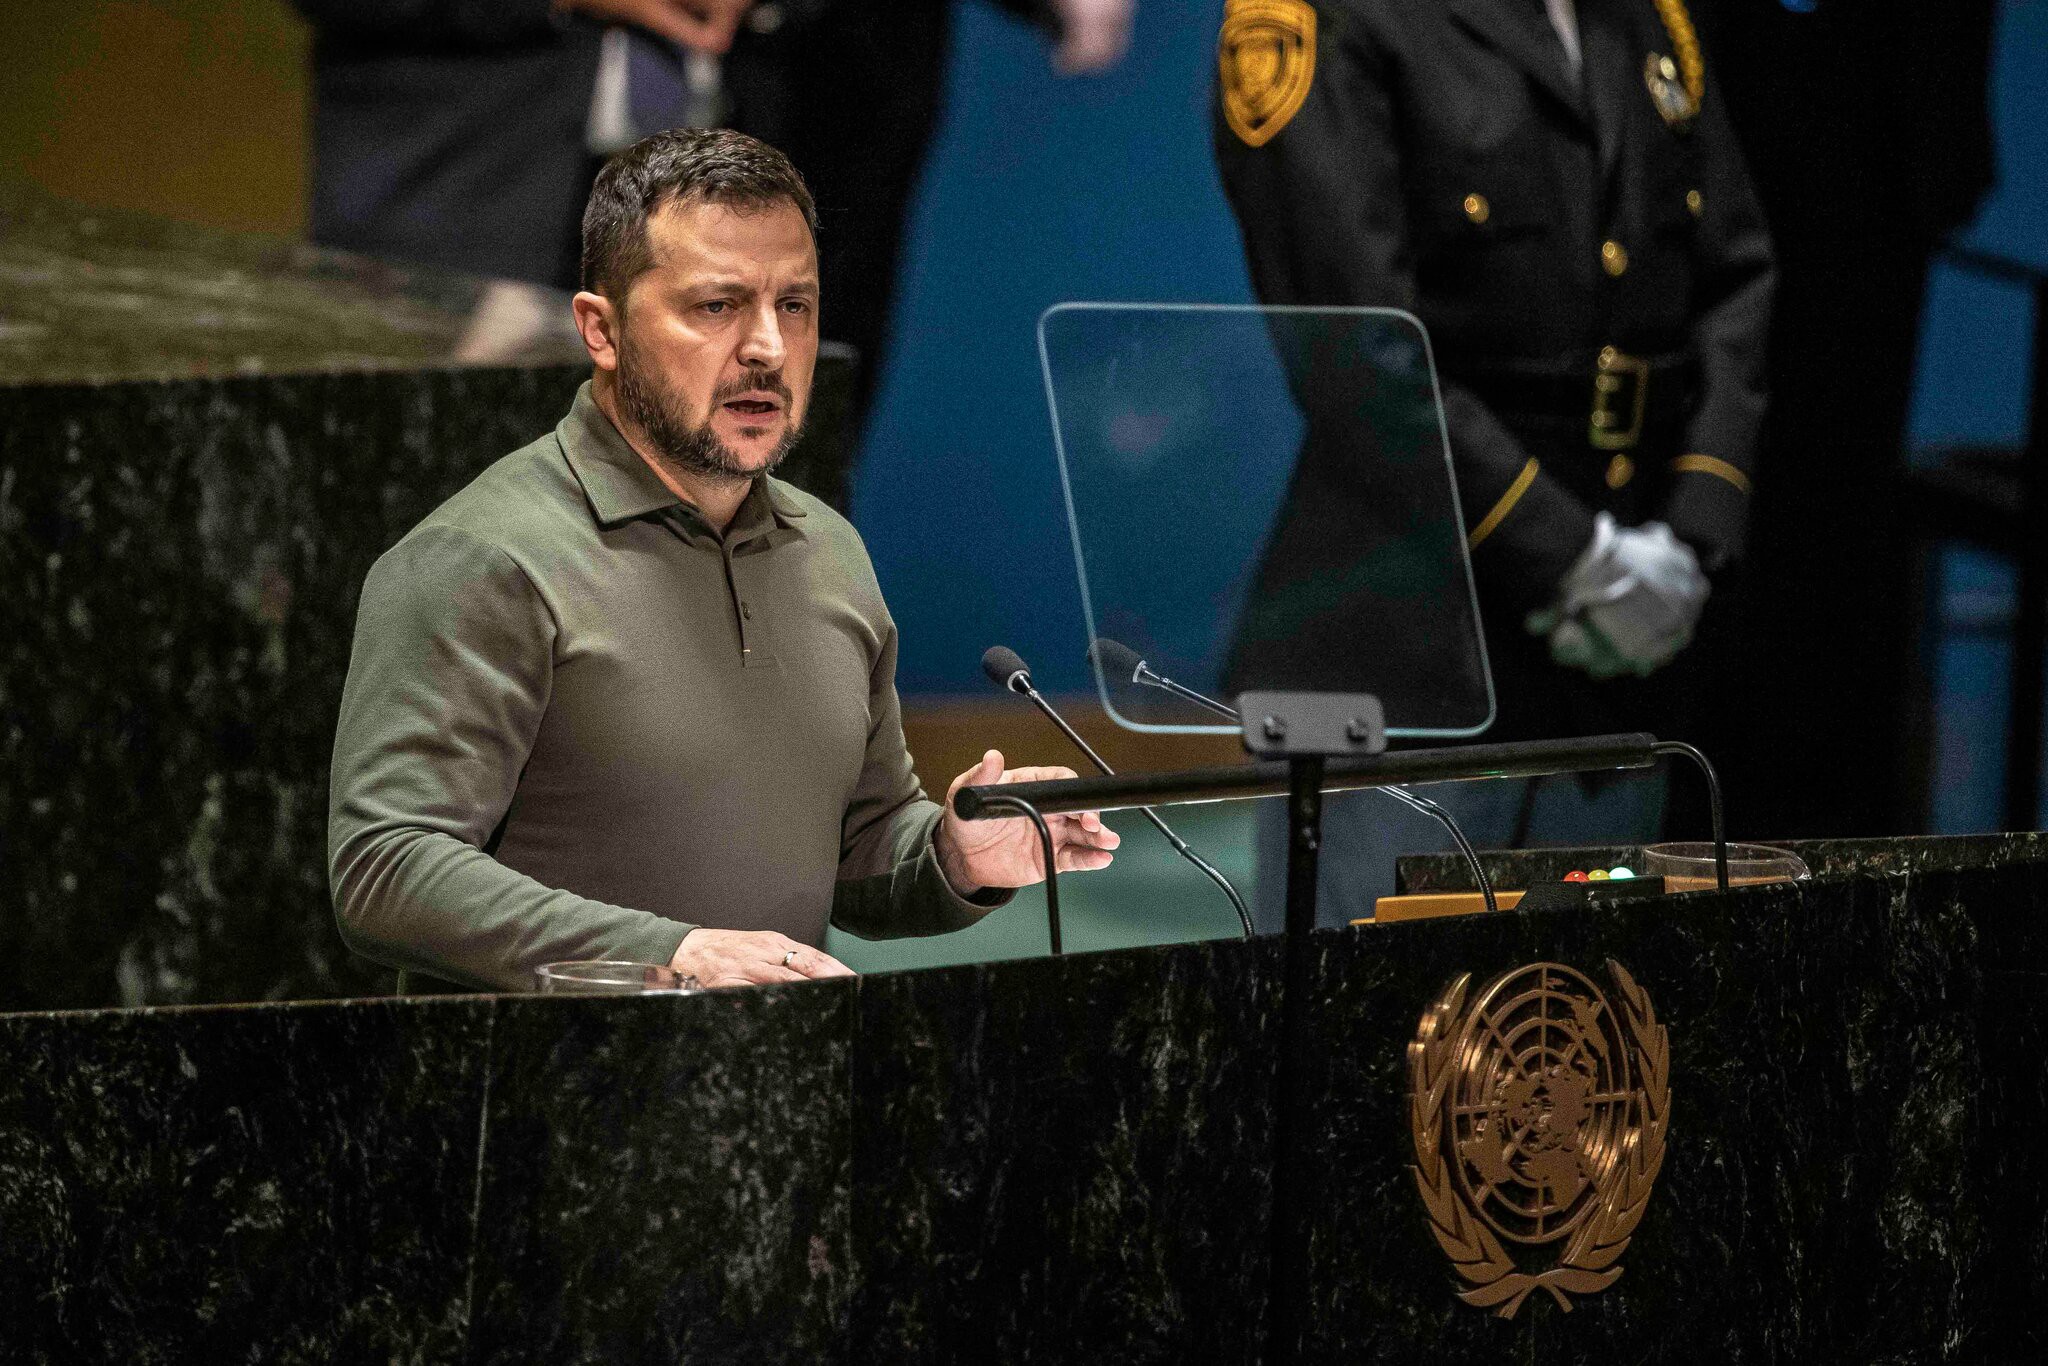 ولودیمیر زلنسکی در سازمان ملل در رابطه با پیامدهای جهانی تجاوز روسیه هشدار داد